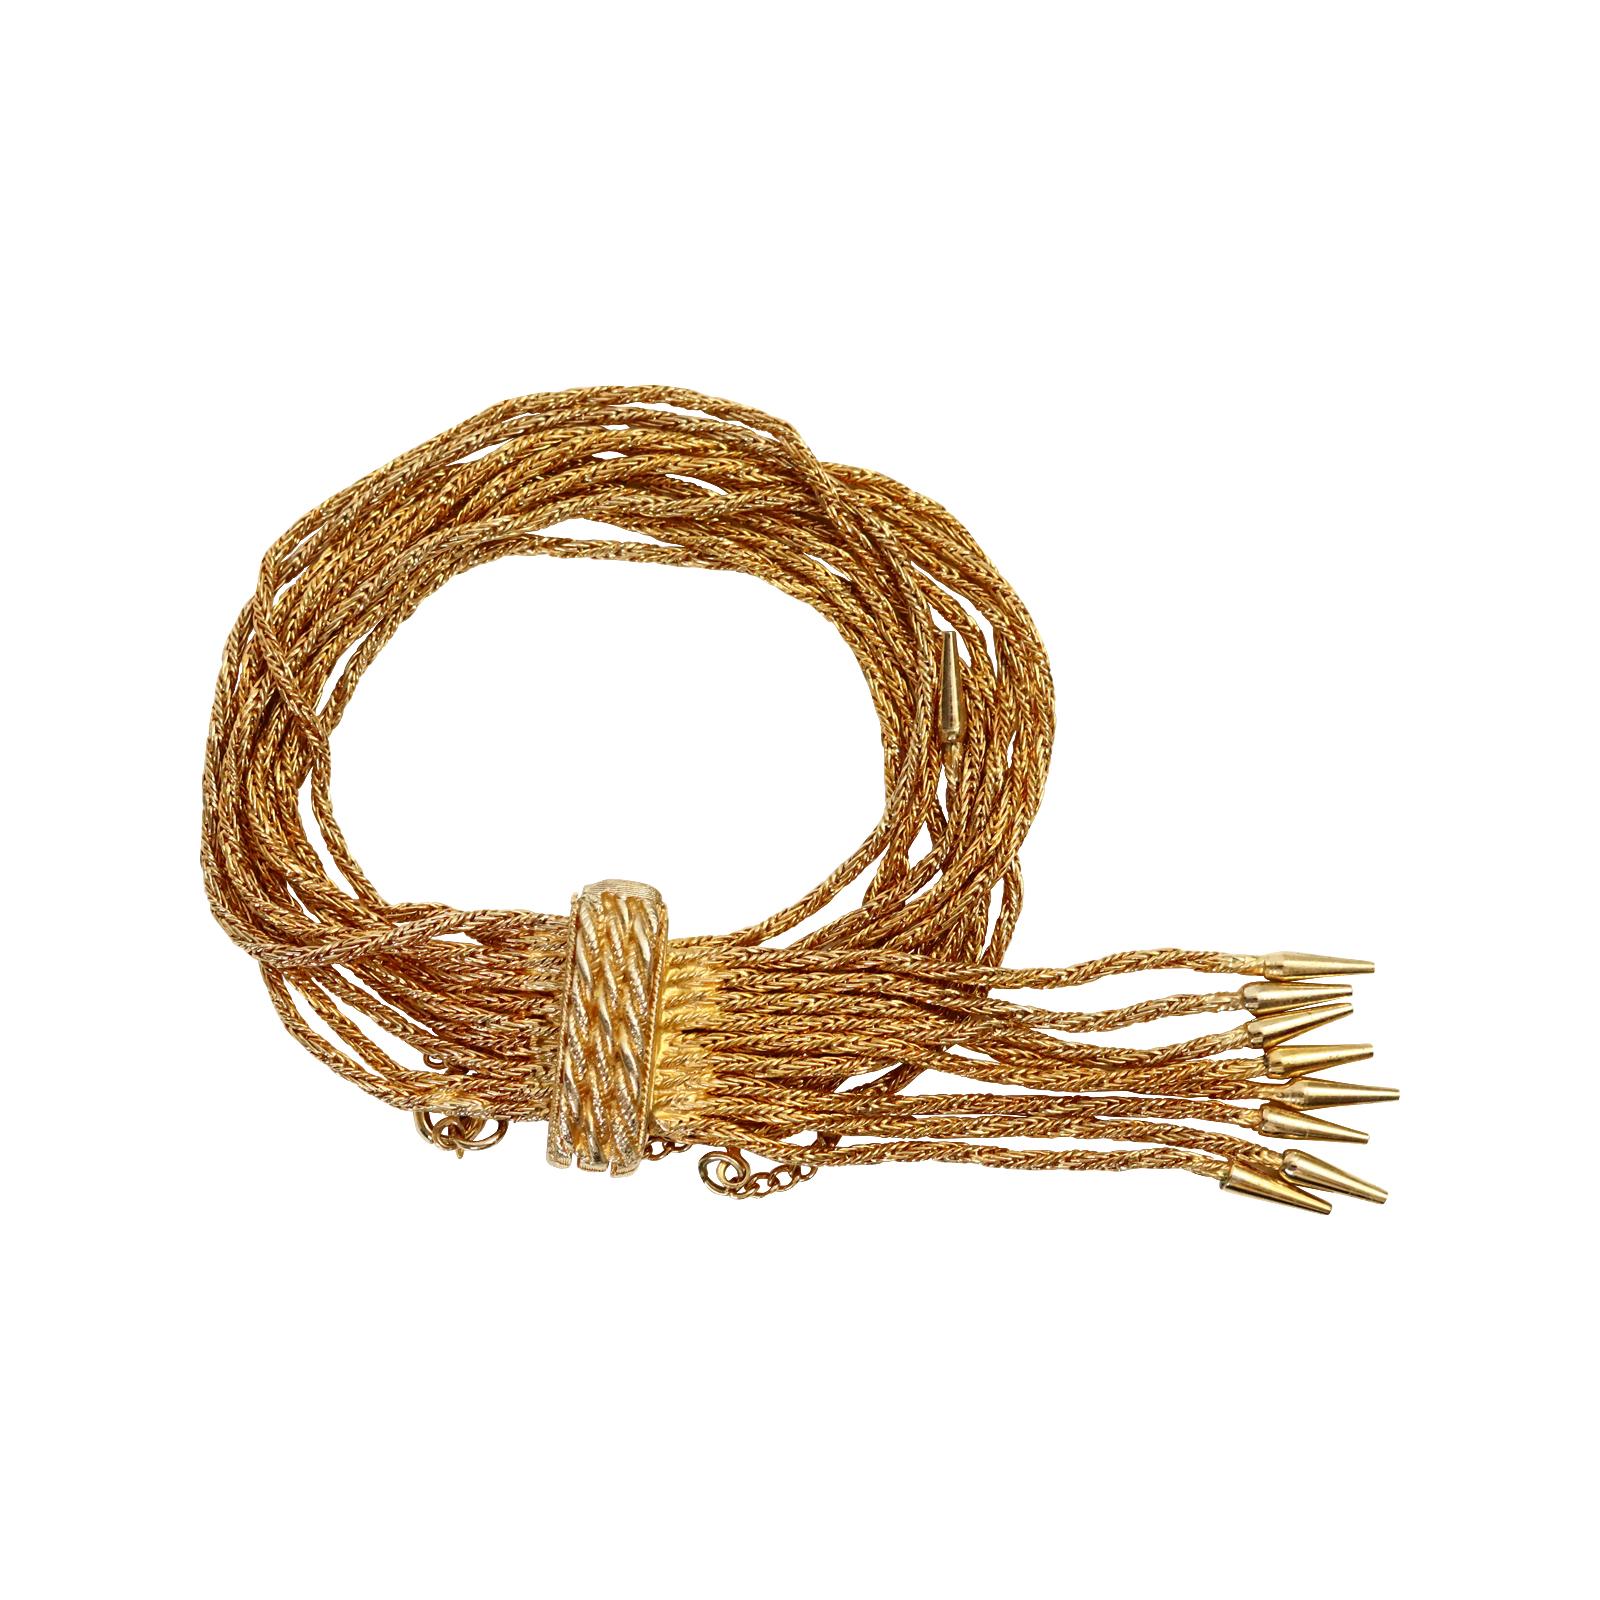 Vintage Vendome Gold 10 link Bracelet with Dangling Pieces Circa 1960s. Ce bracelet s'enroule autour d'un  fermoir rigide qui s'enroule pour se fermer et  est composée de rangées de chaînes pendantes avec, à leur extrémité, des capuchons munis de